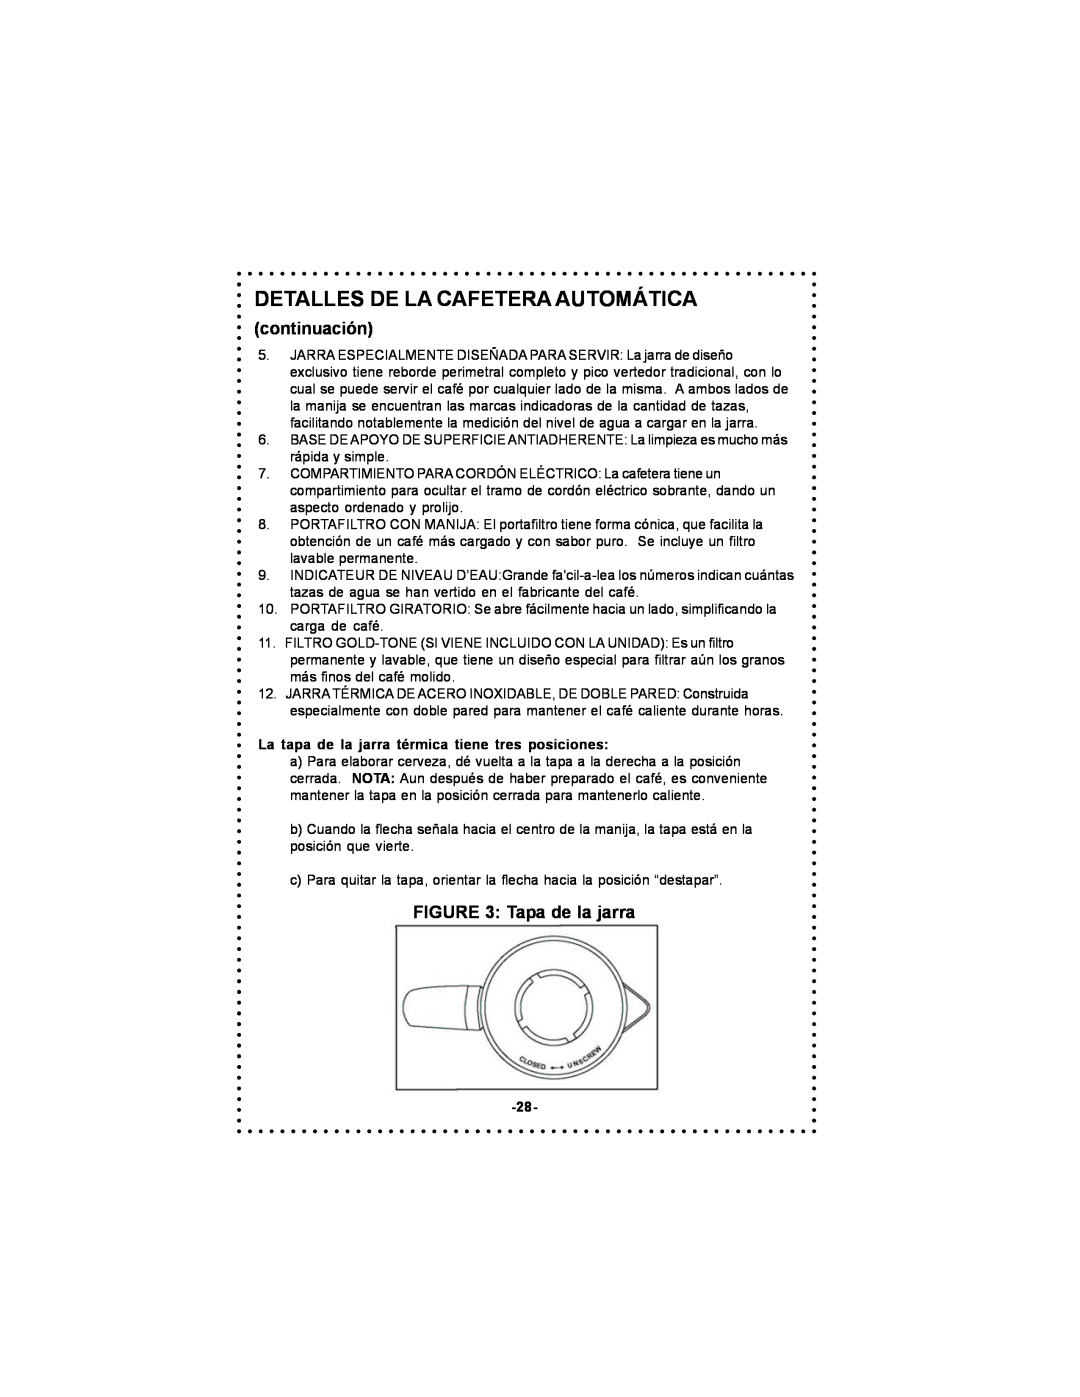 DeLonghi DC55TC Series, DC54TC Series instruction manual Detalles De La Cafetera Automática, continuación, Tapa de la jarra 